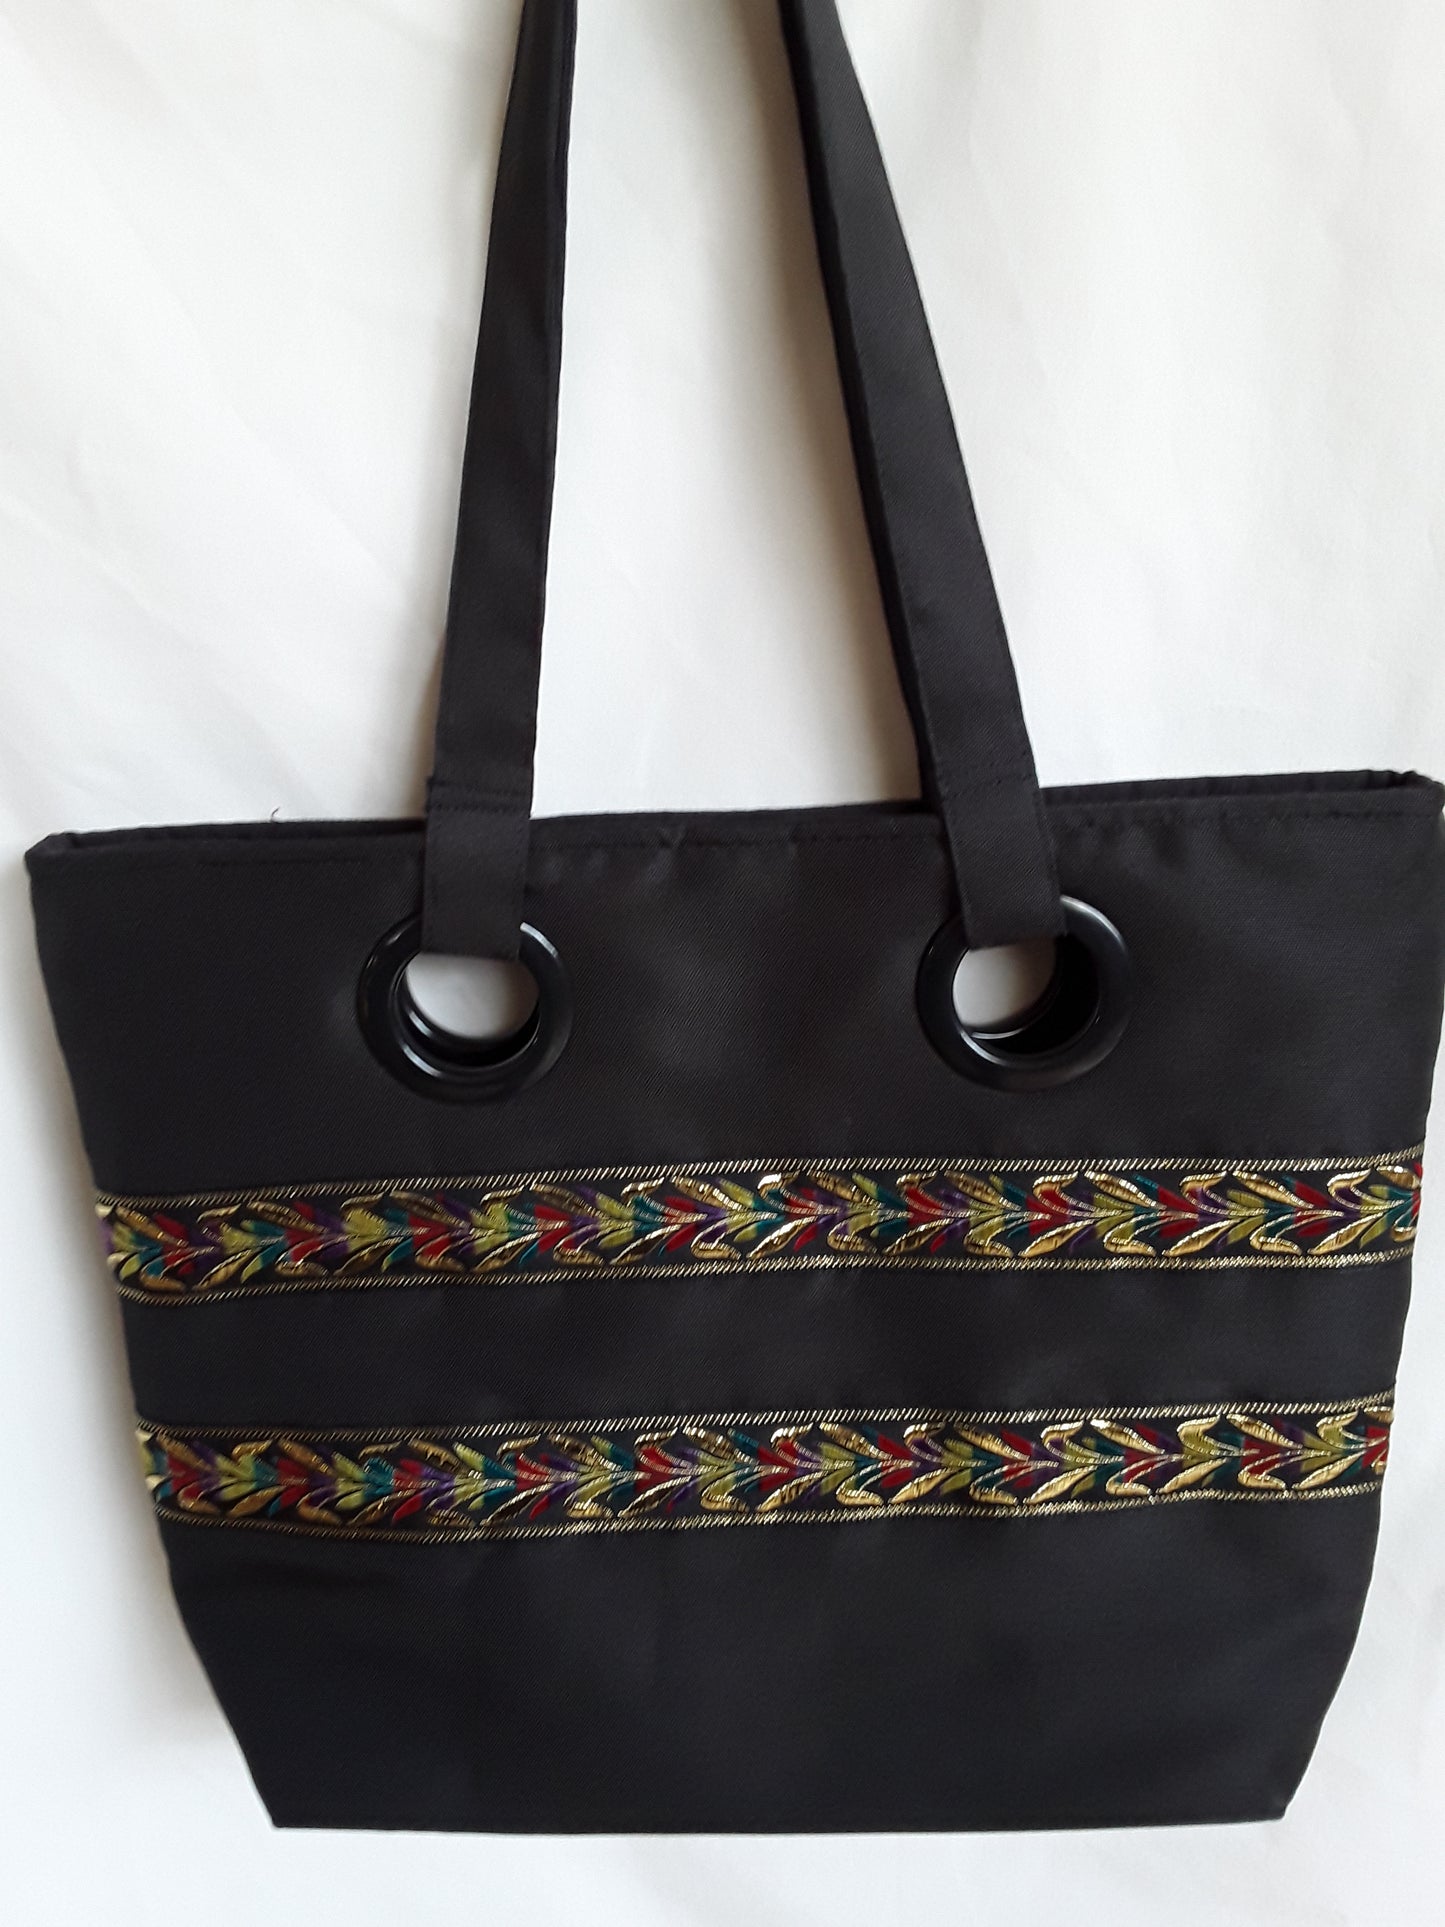 Handbag, Black elegant Grommet Handbag, Black Shoulder bag